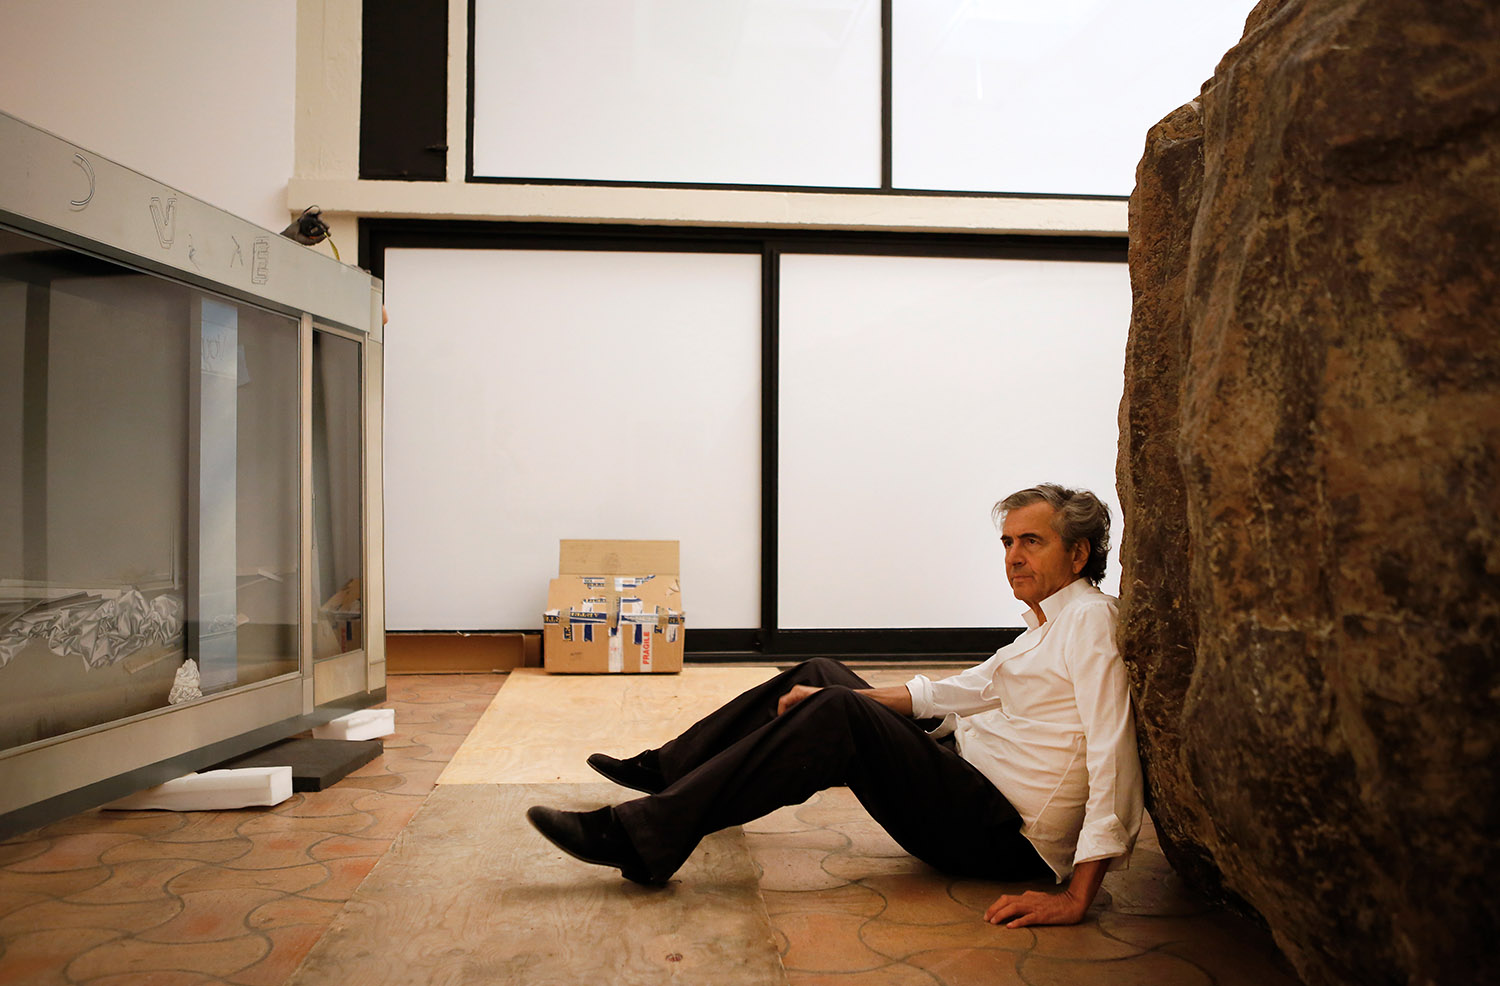 Bernard-Henri Lévy, assis par terre, est adossé à la "Caverne de Platon" de Huang Yong Ping.